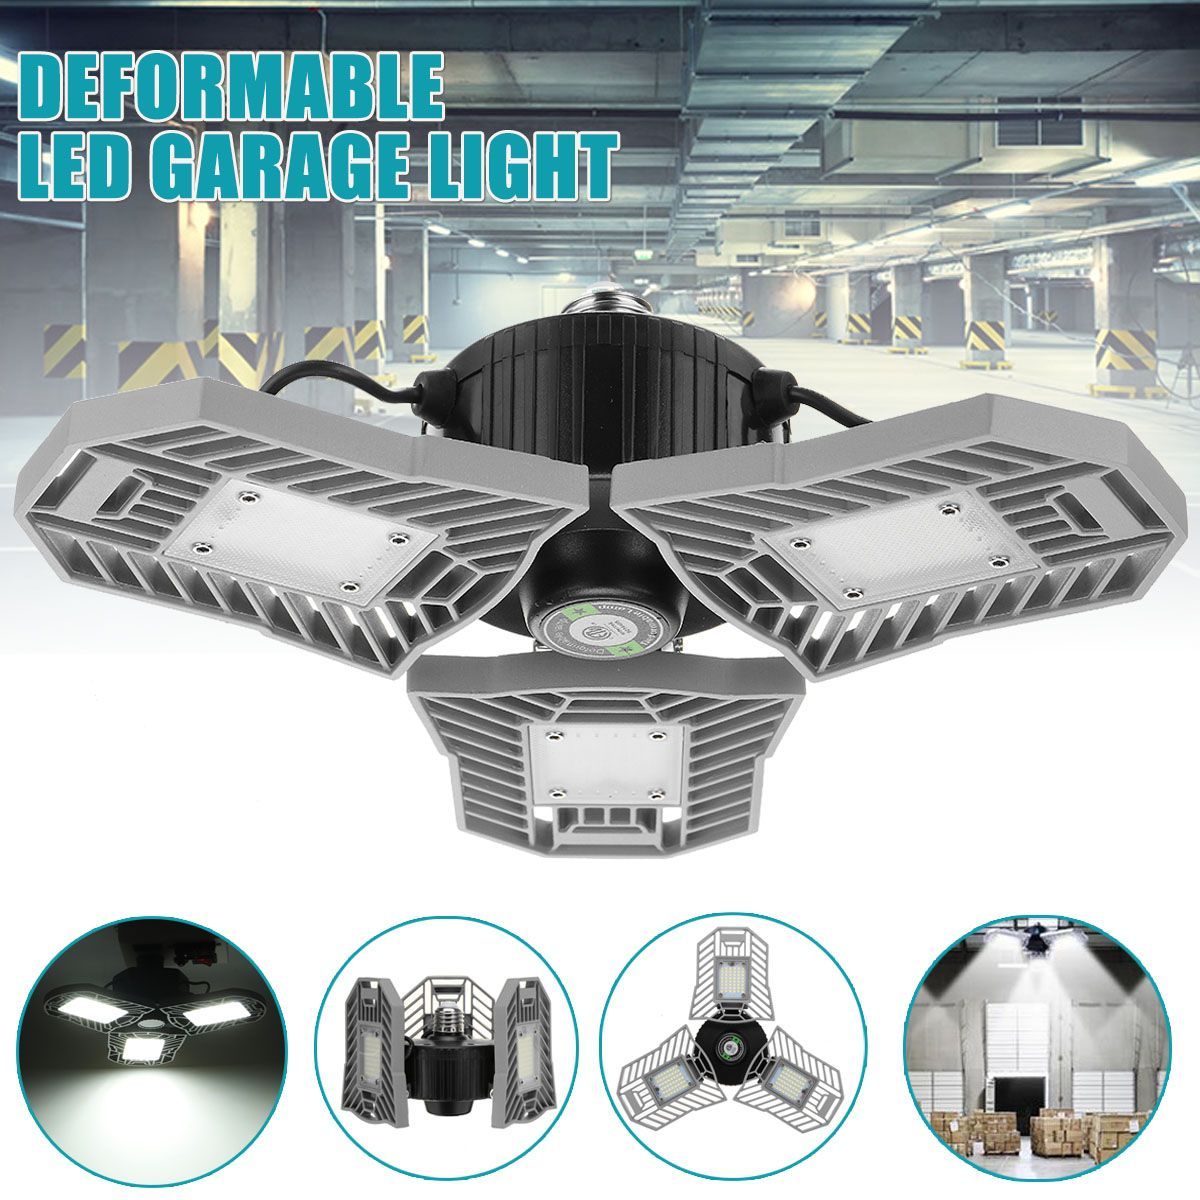 60W-85-265V-Deformable-LED-Garage-Light-Super-Bright-Ceiling-Lamp-E27-Base-1730018